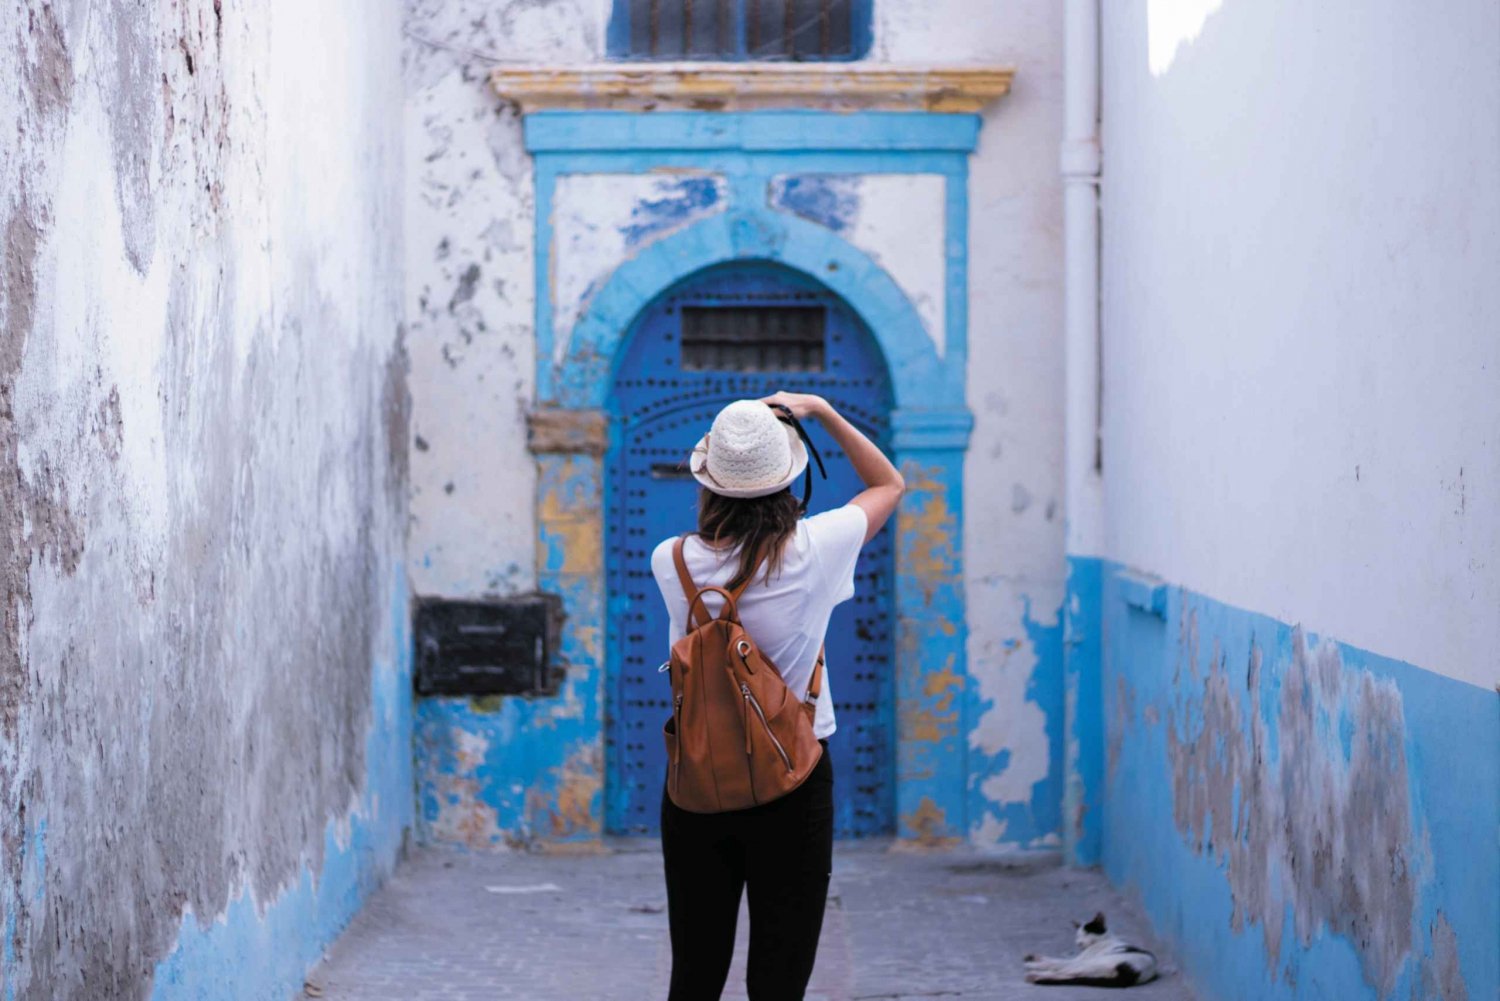 Desde Marrakech Excursión de un día a Essaouira con recogida en el hotel